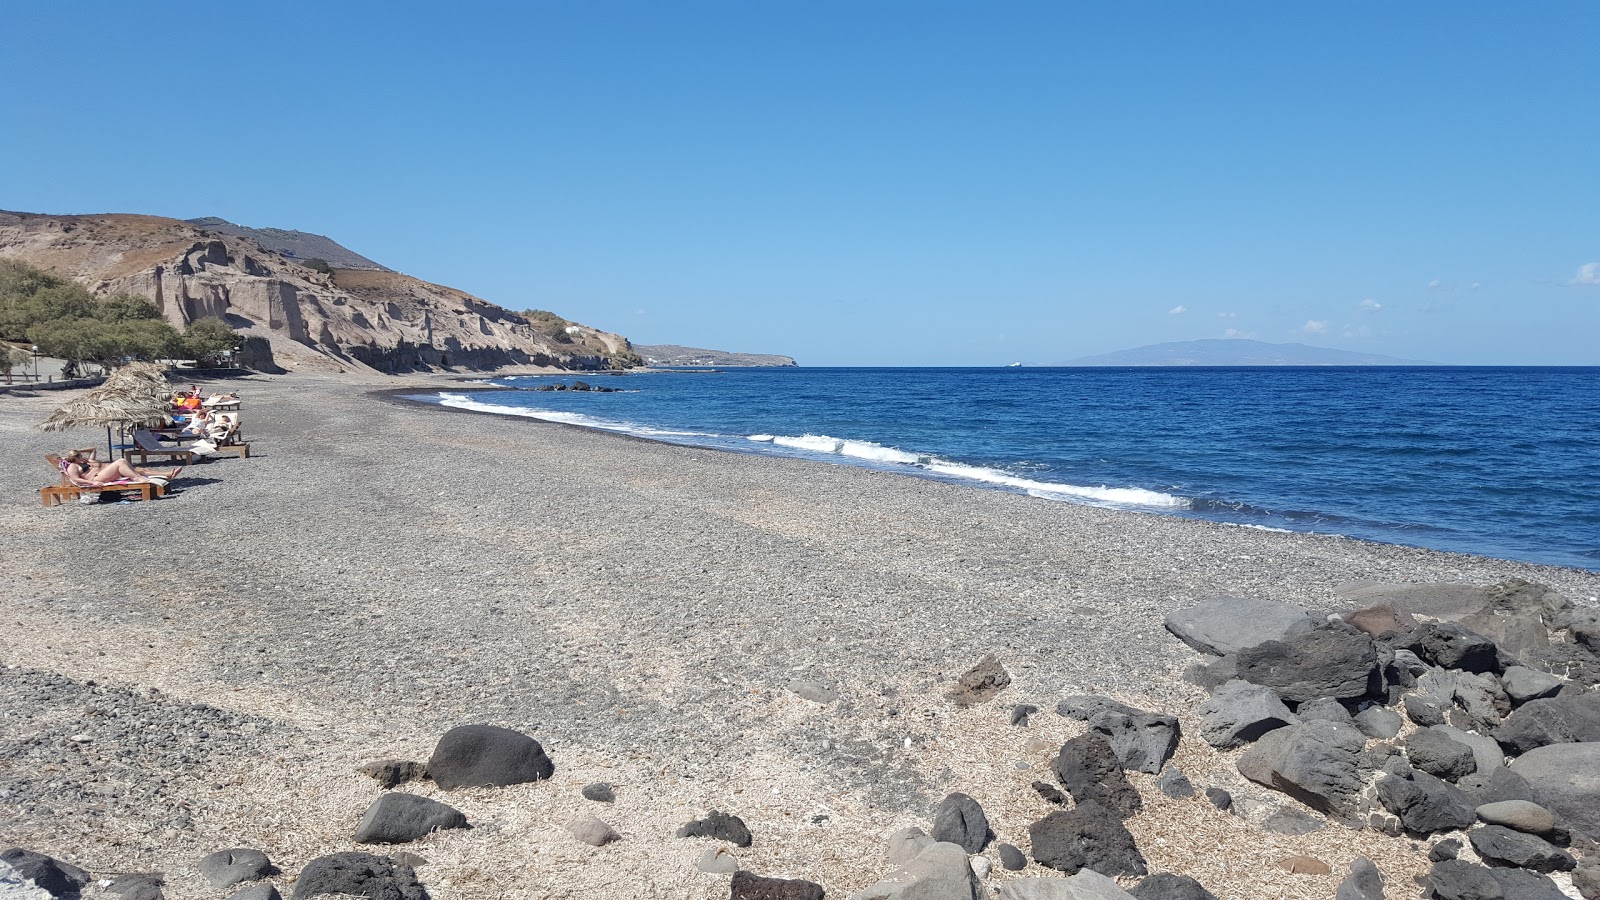 Vourvoulos beach'in fotoğrafı gri kum ve çakıl yüzey ile